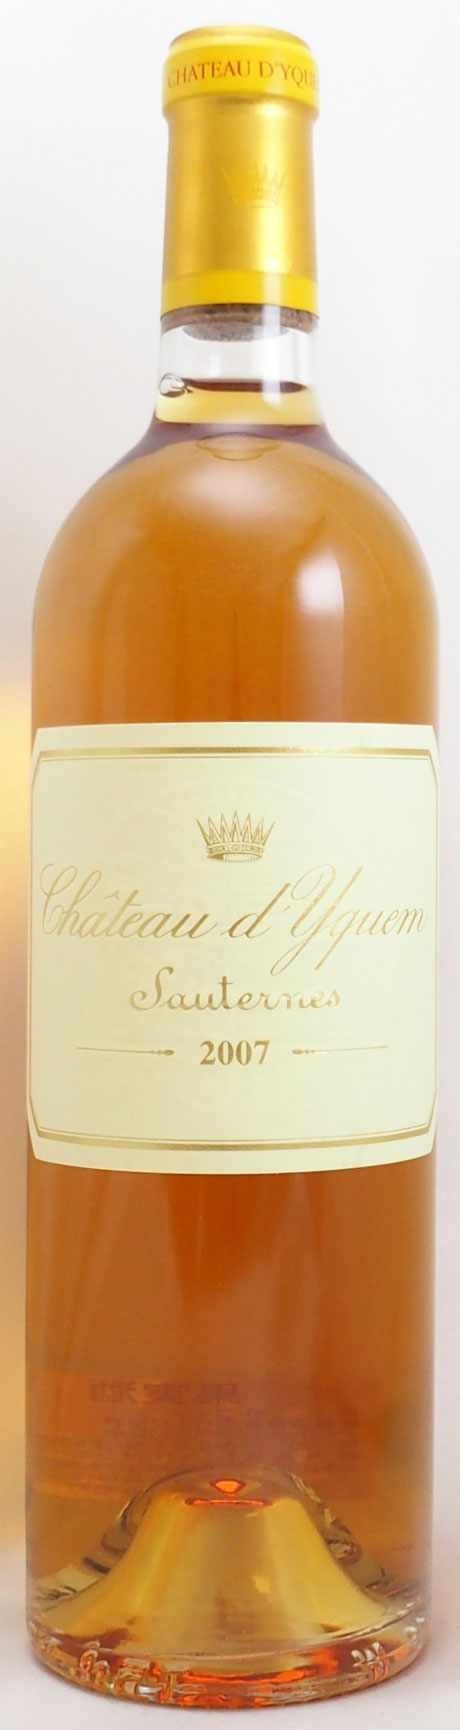 2007年 シャトー ディケム CHATEAU YQUEM の販売[ヴィンテージワイン